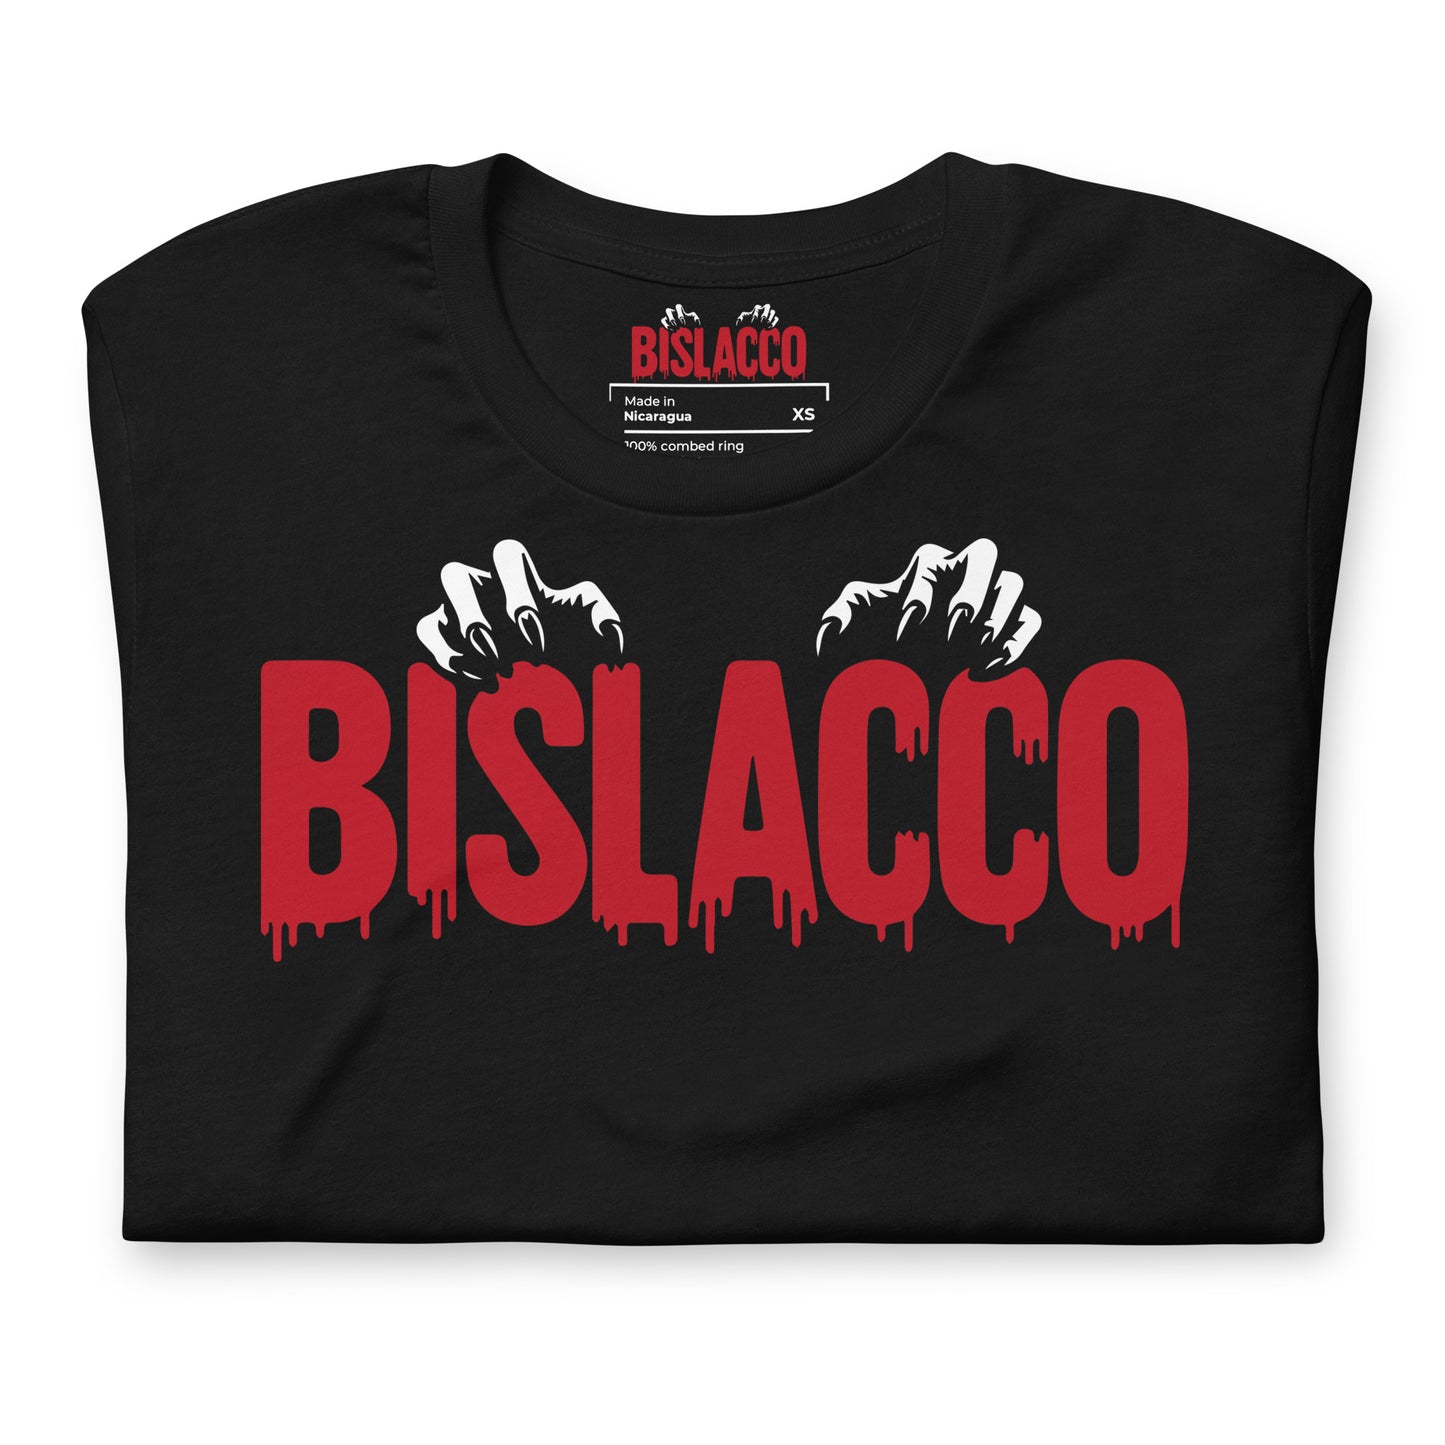 Camiseta unisex Bislacco